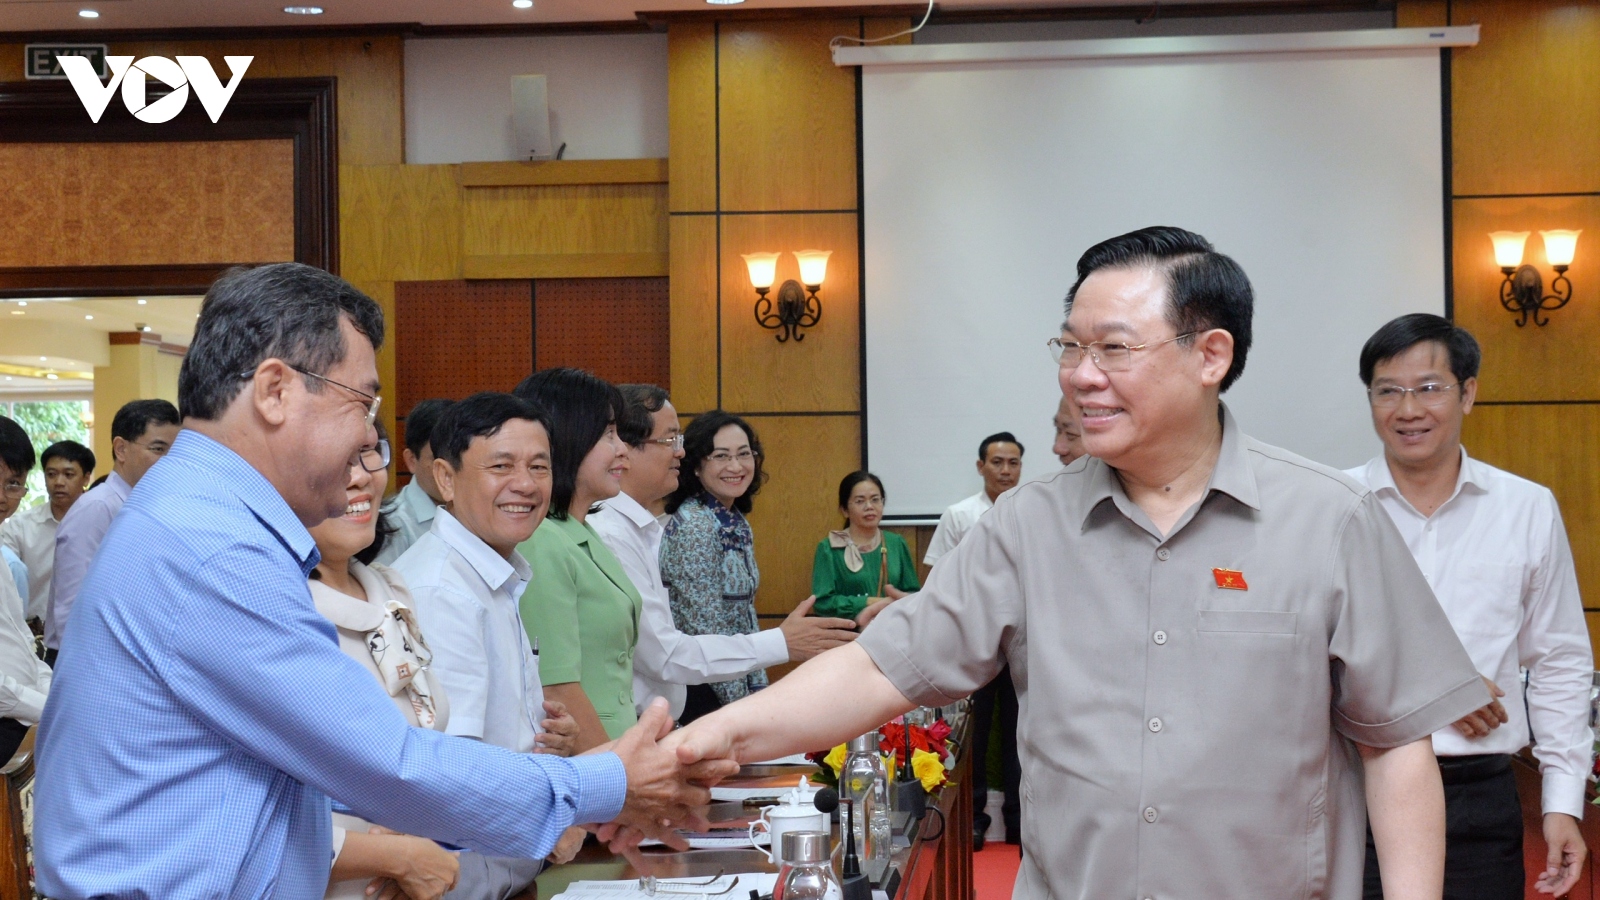 Chủ tịch Quốc hội làm việc tại Tây Ninh, thắp hương tưởng nhớ liệt sĩ Đồi 82